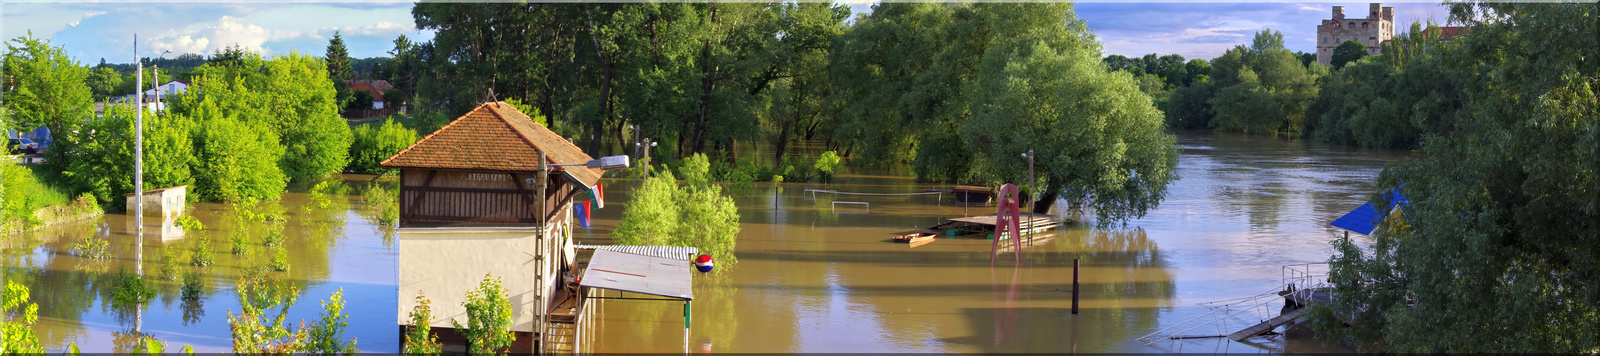 Flood 2010 Sárospatak